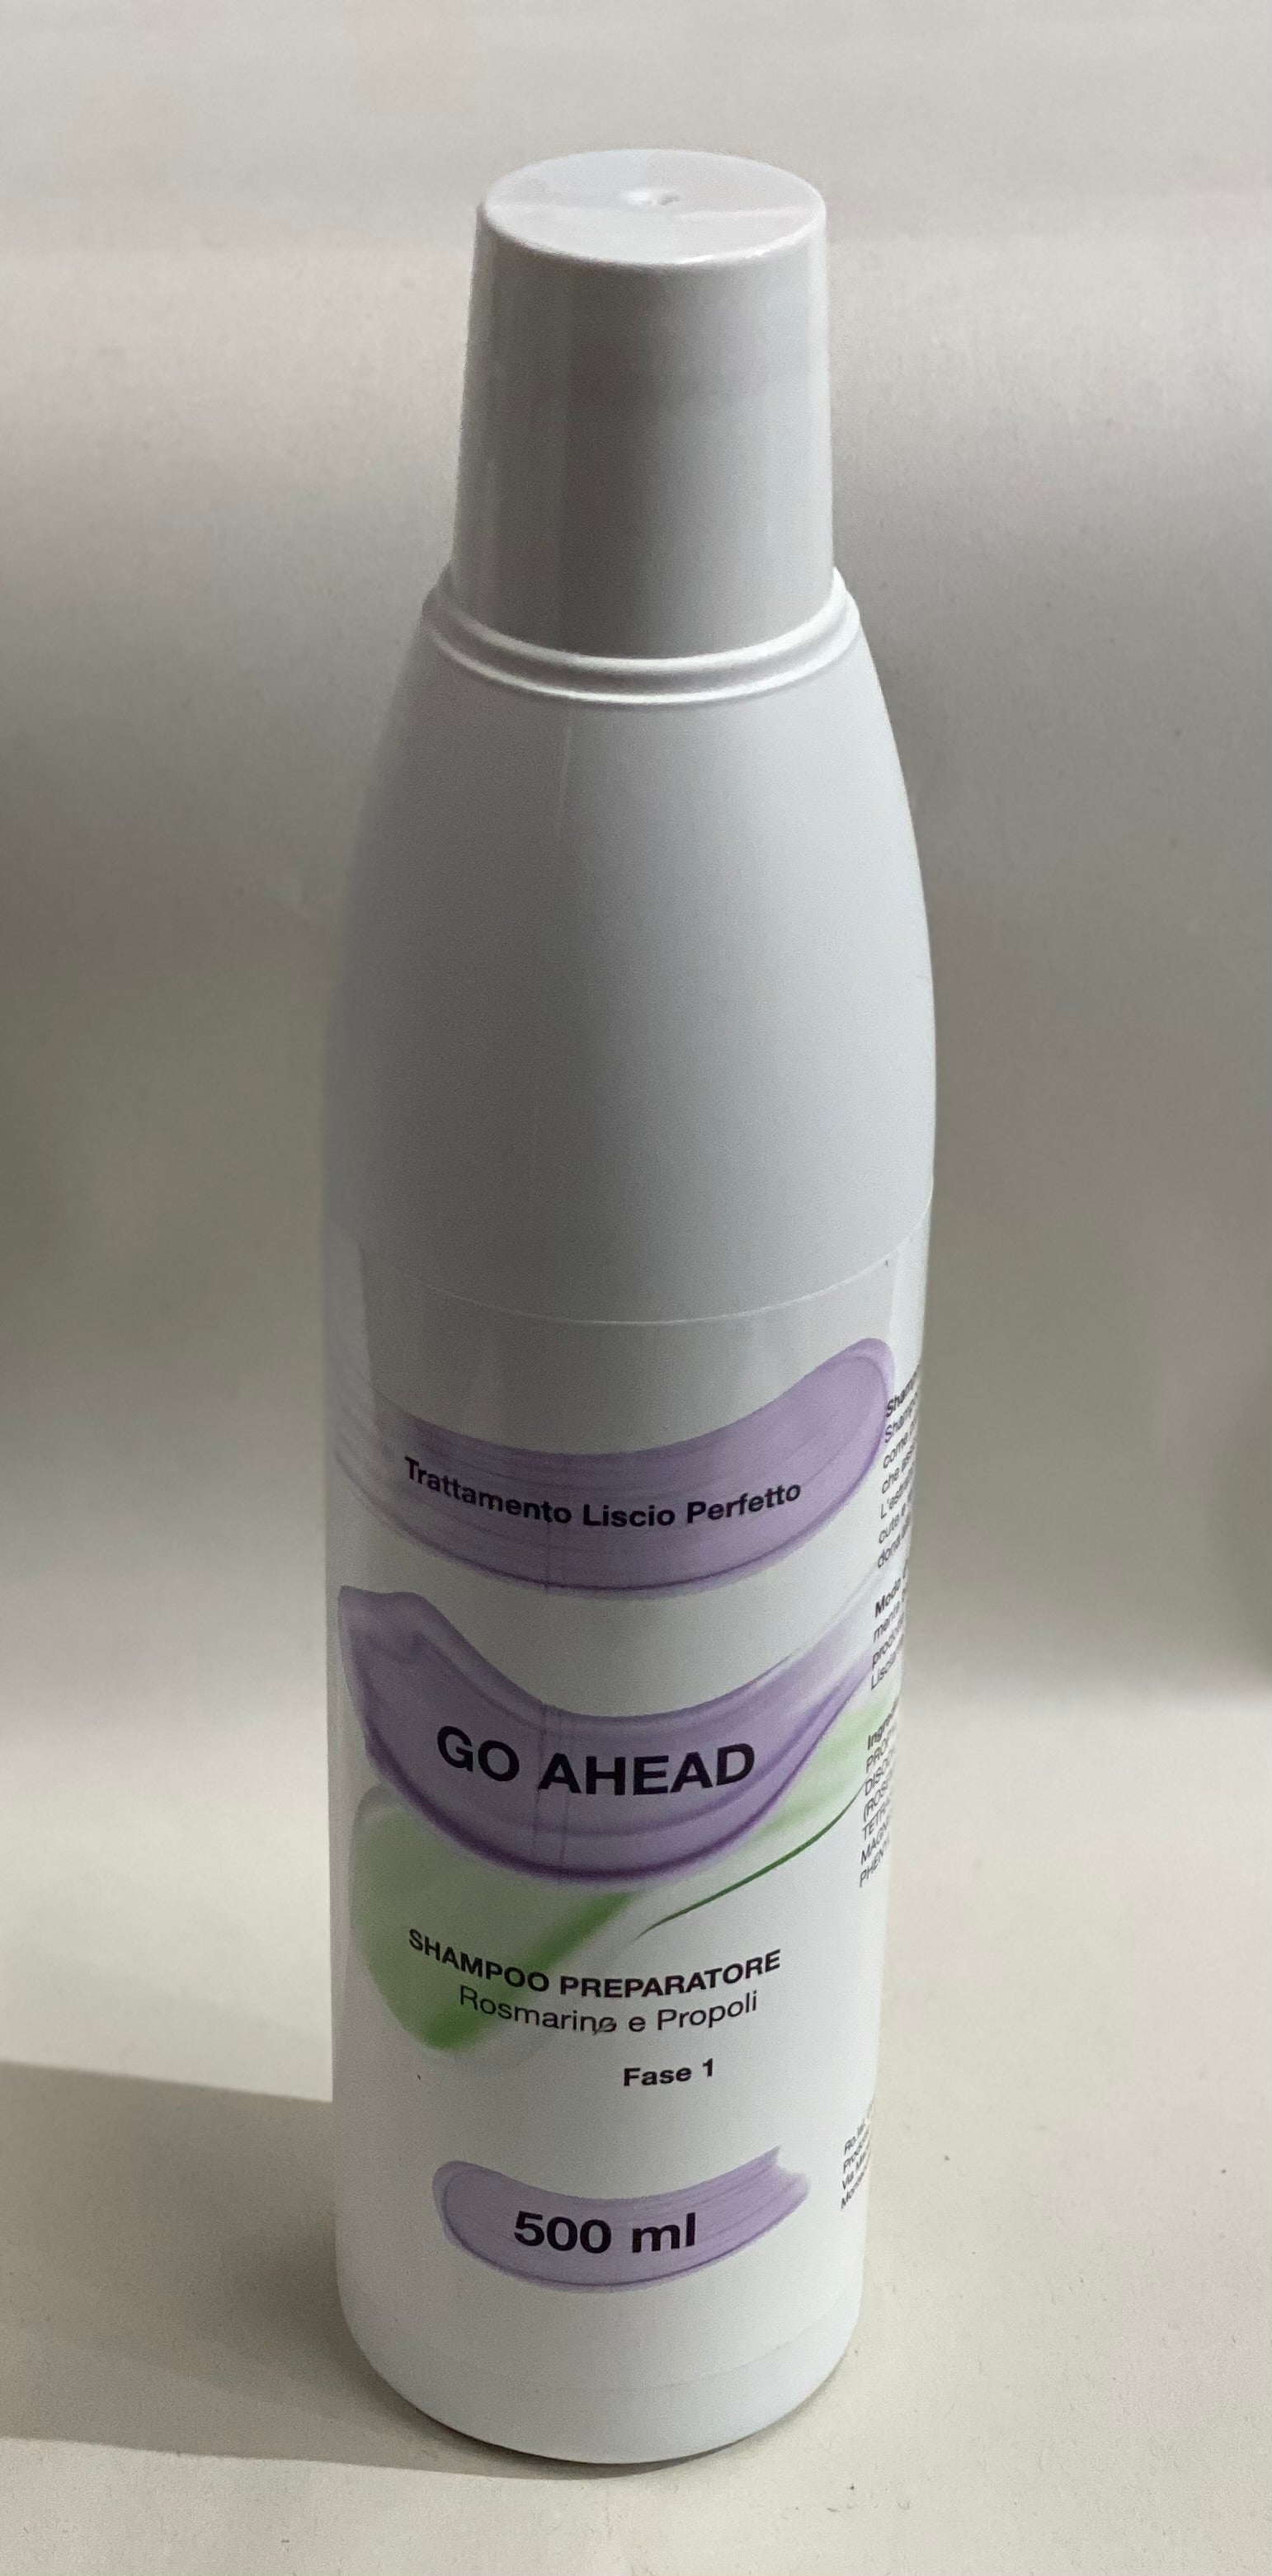 Go Ahead Trattamento Liscio Perfetto Fase 1 Shampoo Preparatore 500 ml